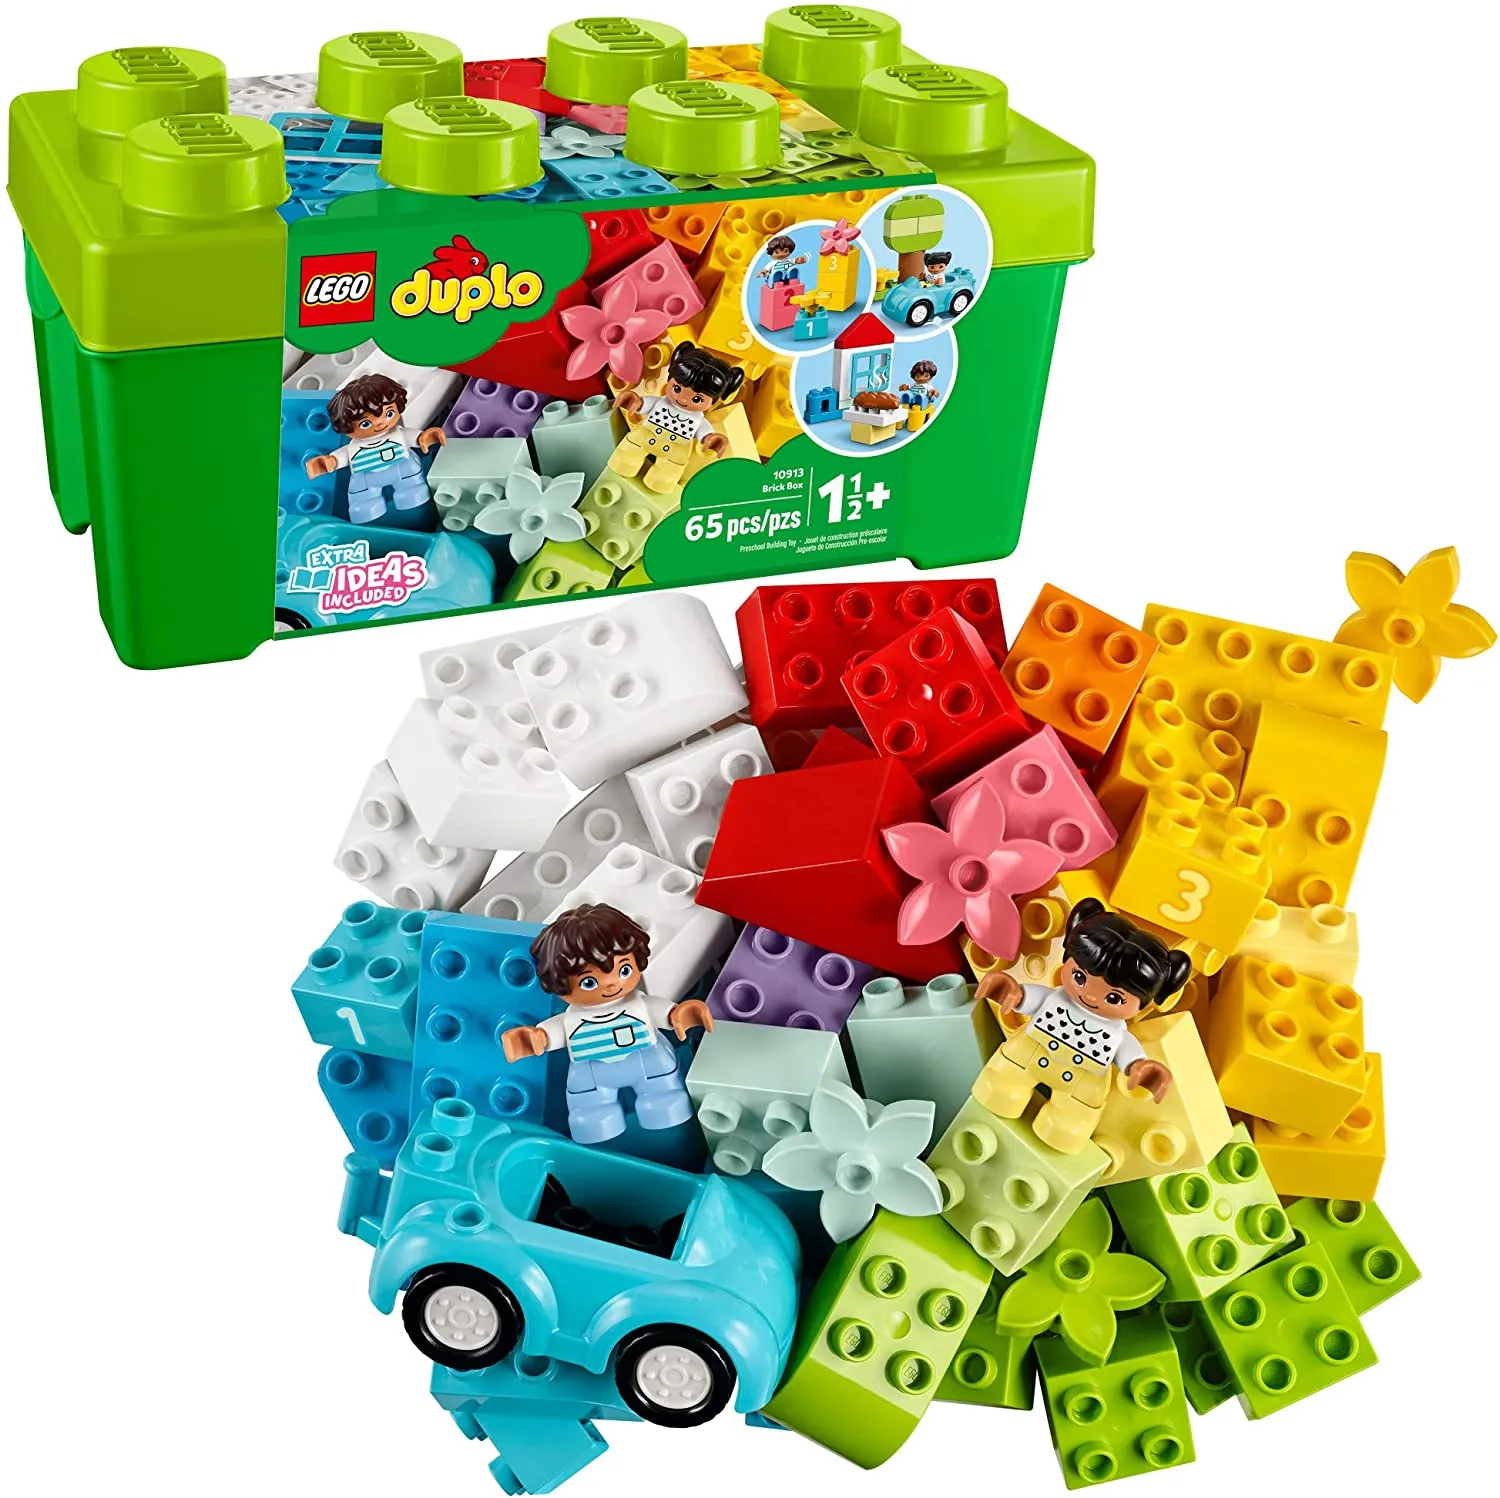 Đồ chơi LEGO DUPLO - Thùng Gạch Duplo Sáng Tạo - Mã SP 10913